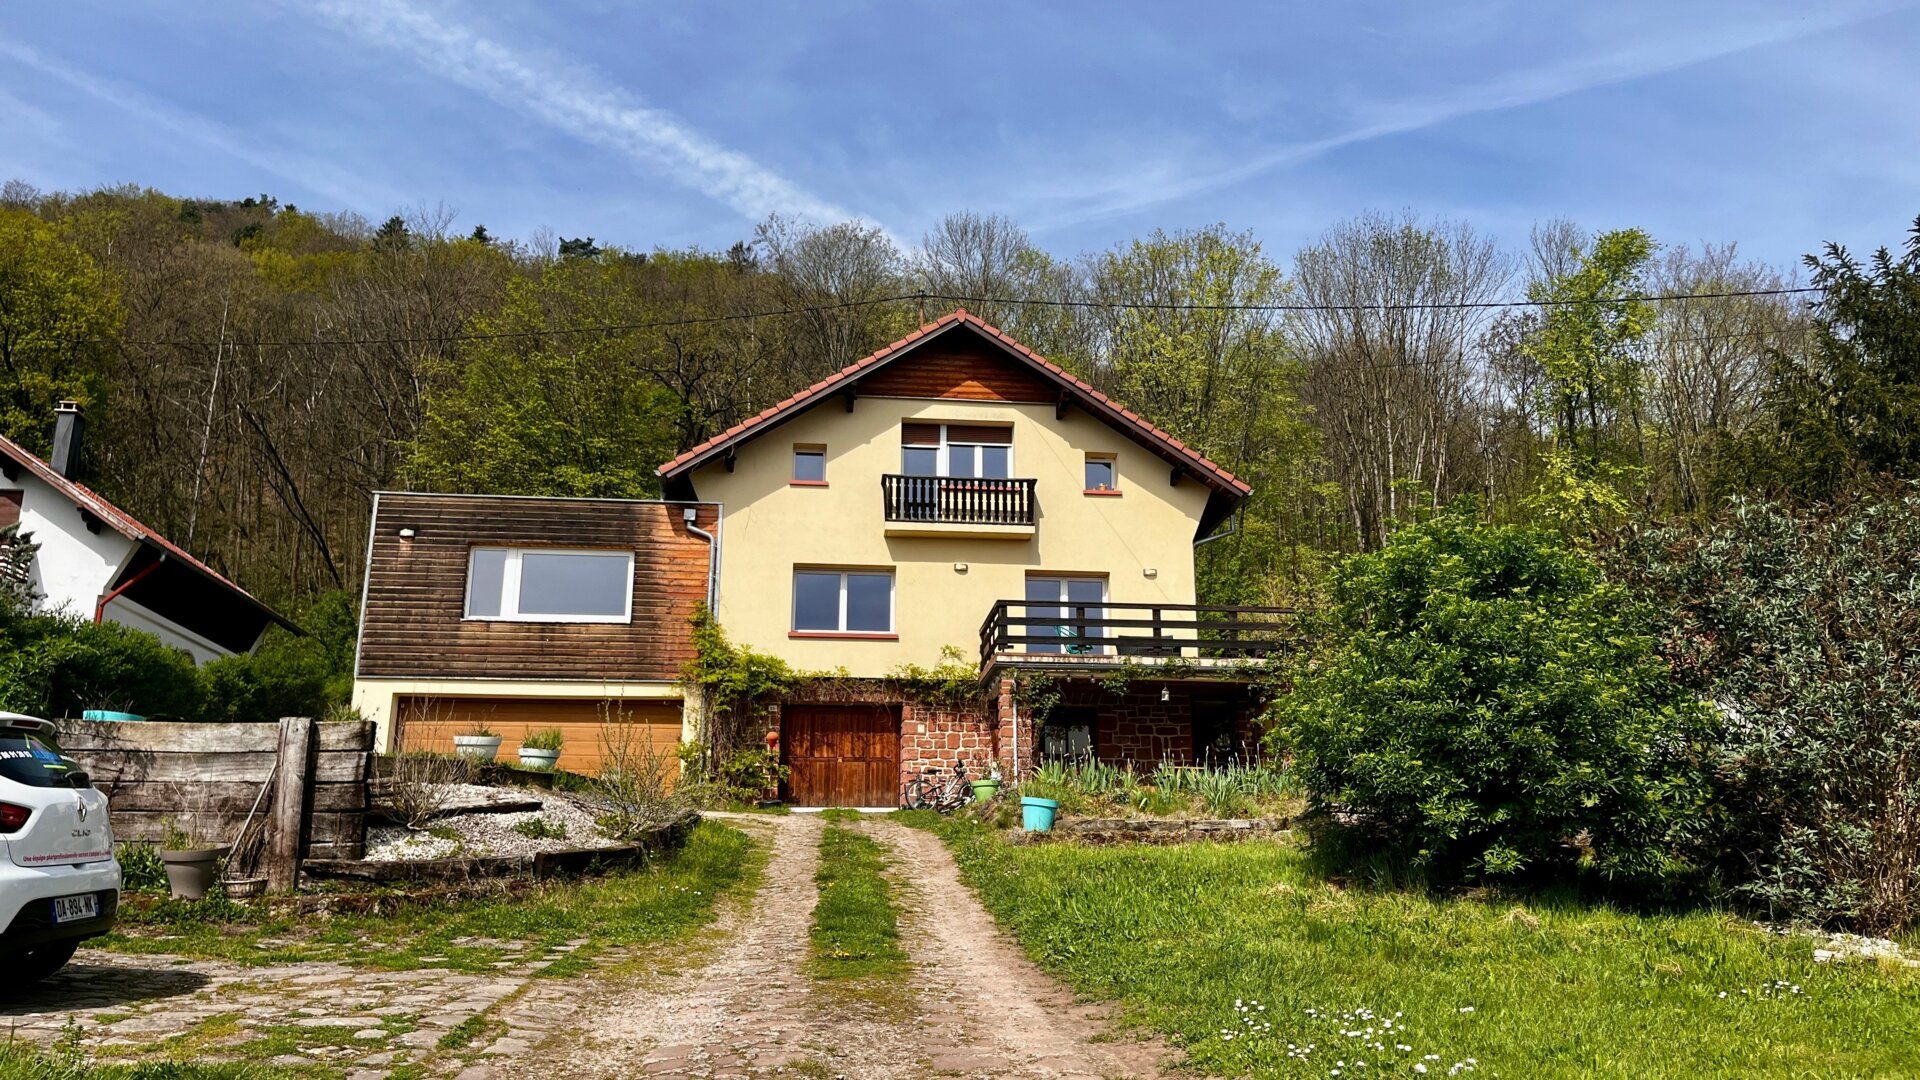 Maison à vendre 8 180m2 à Neuwiller-lès-Saverne vignette-2